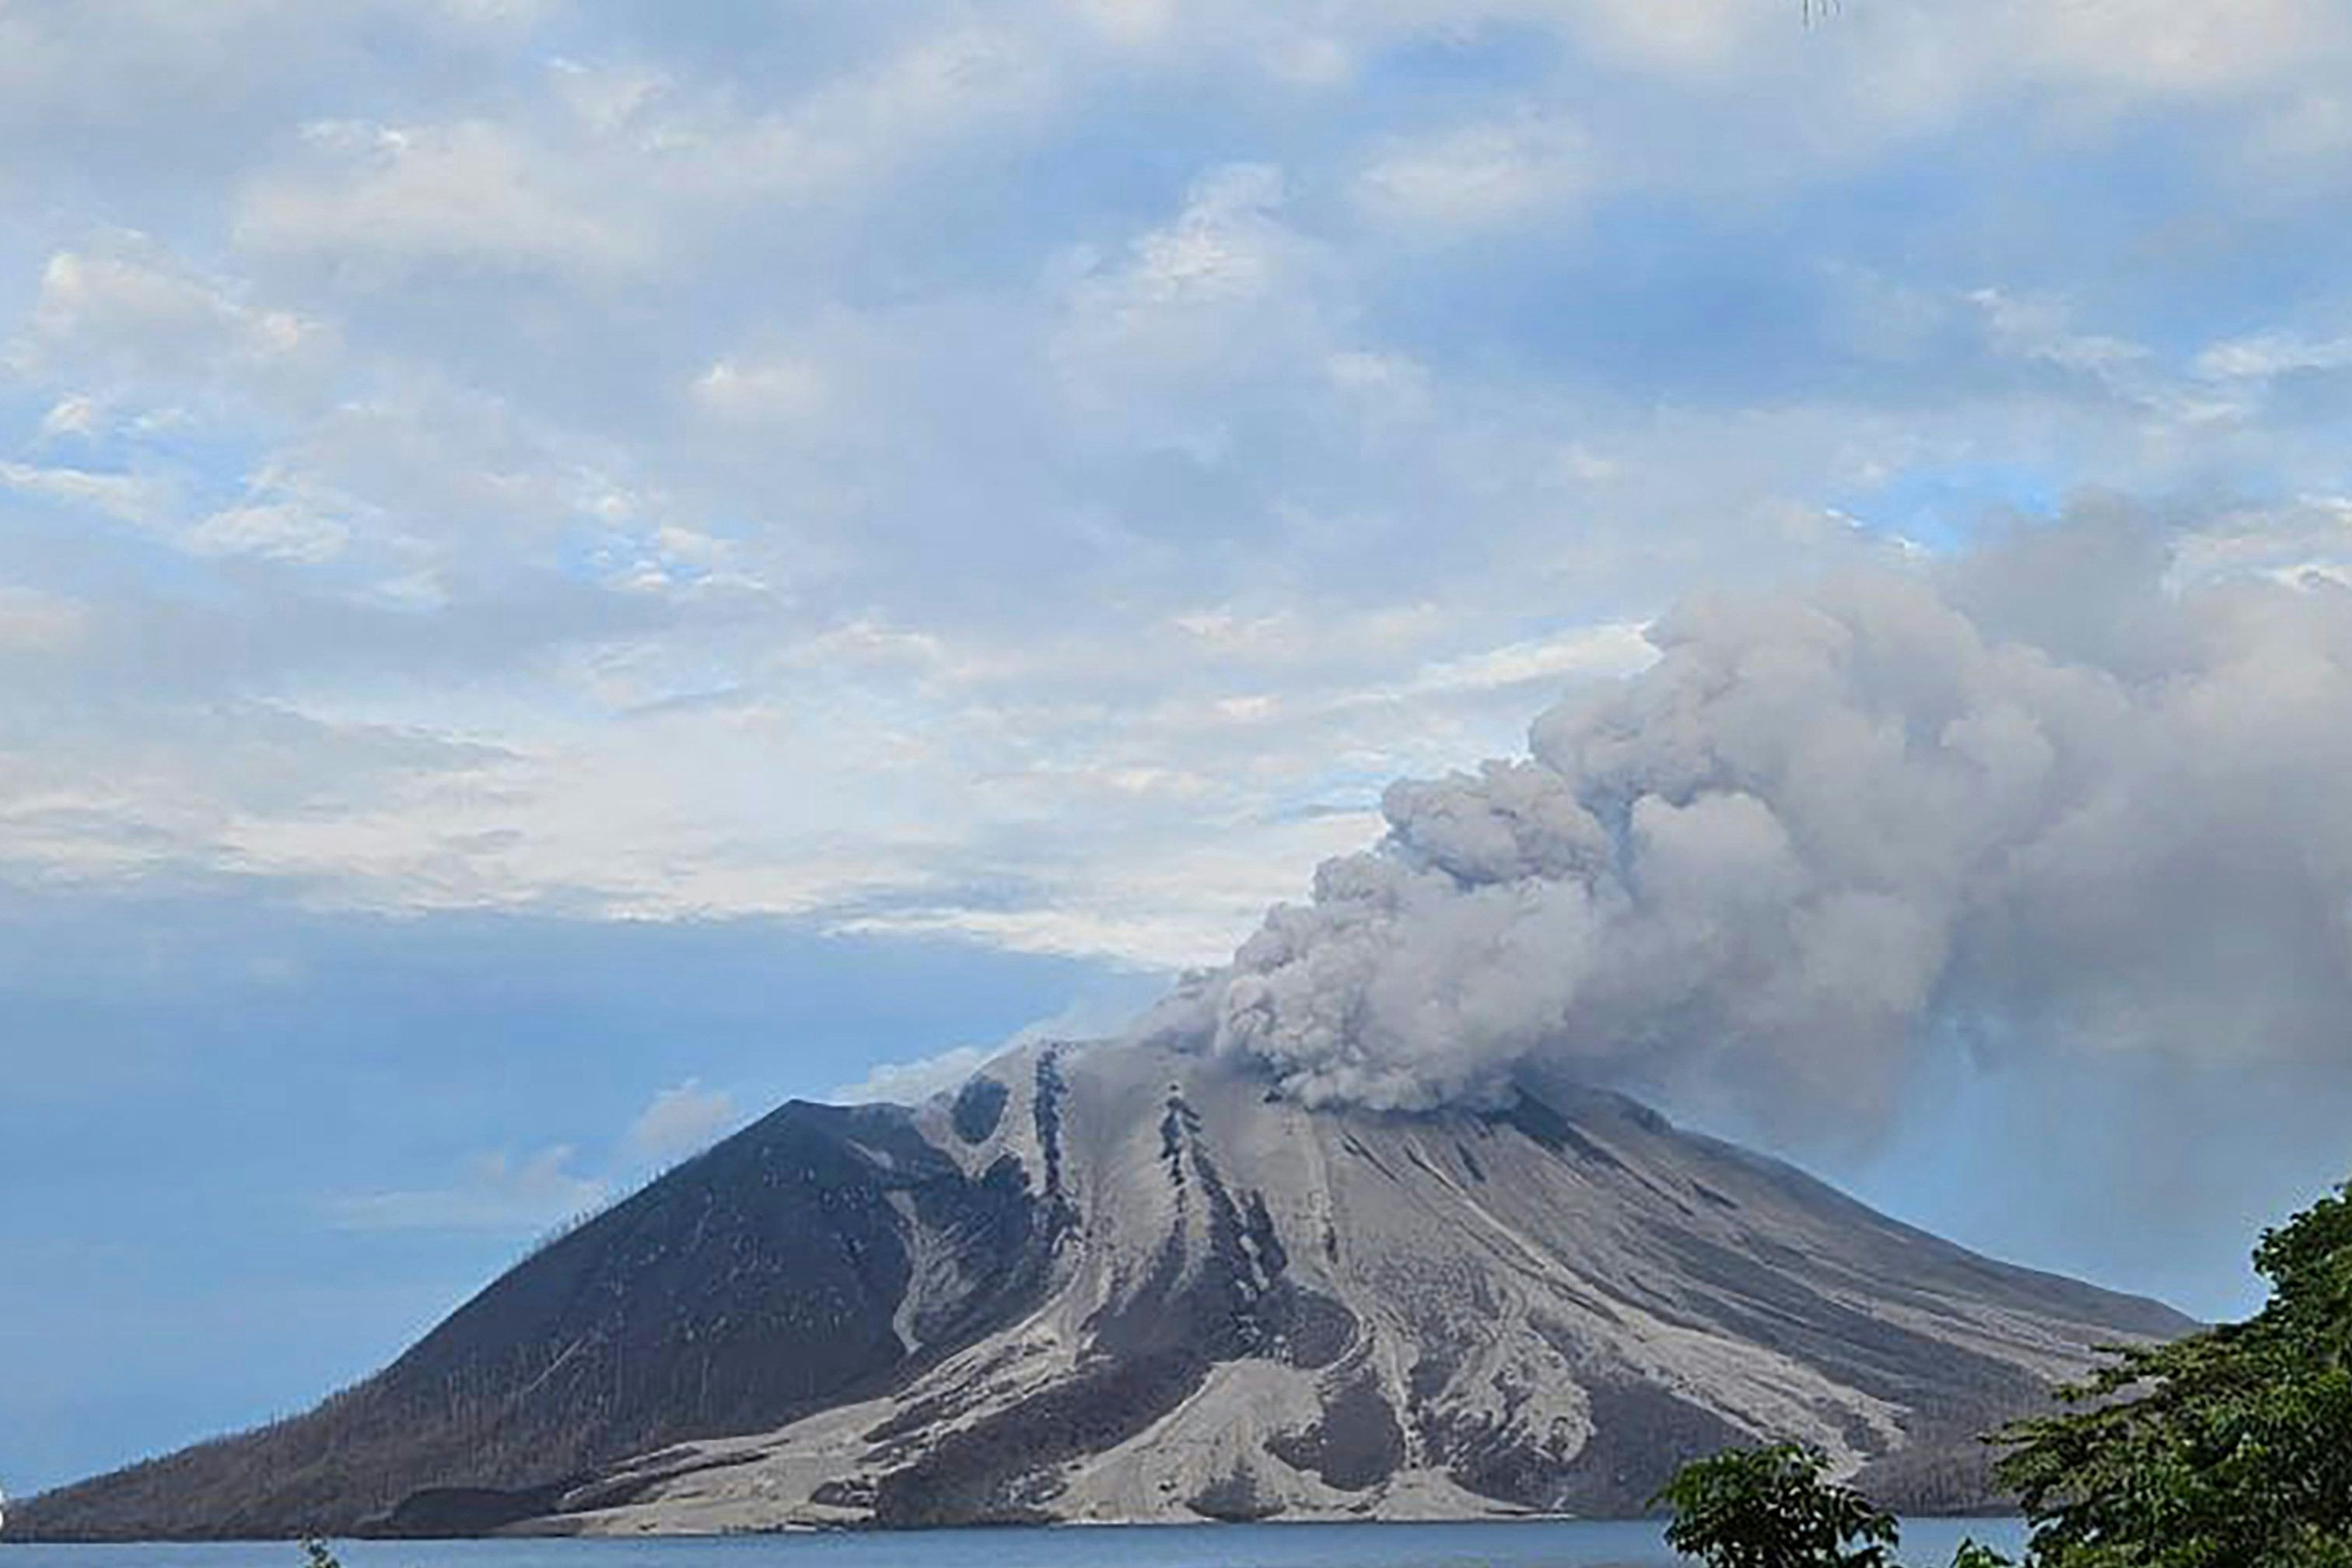 tsunami-gefahr: tausende evakuierungen nach vulkanausbruch in indonesien – flughäfen geschlossen